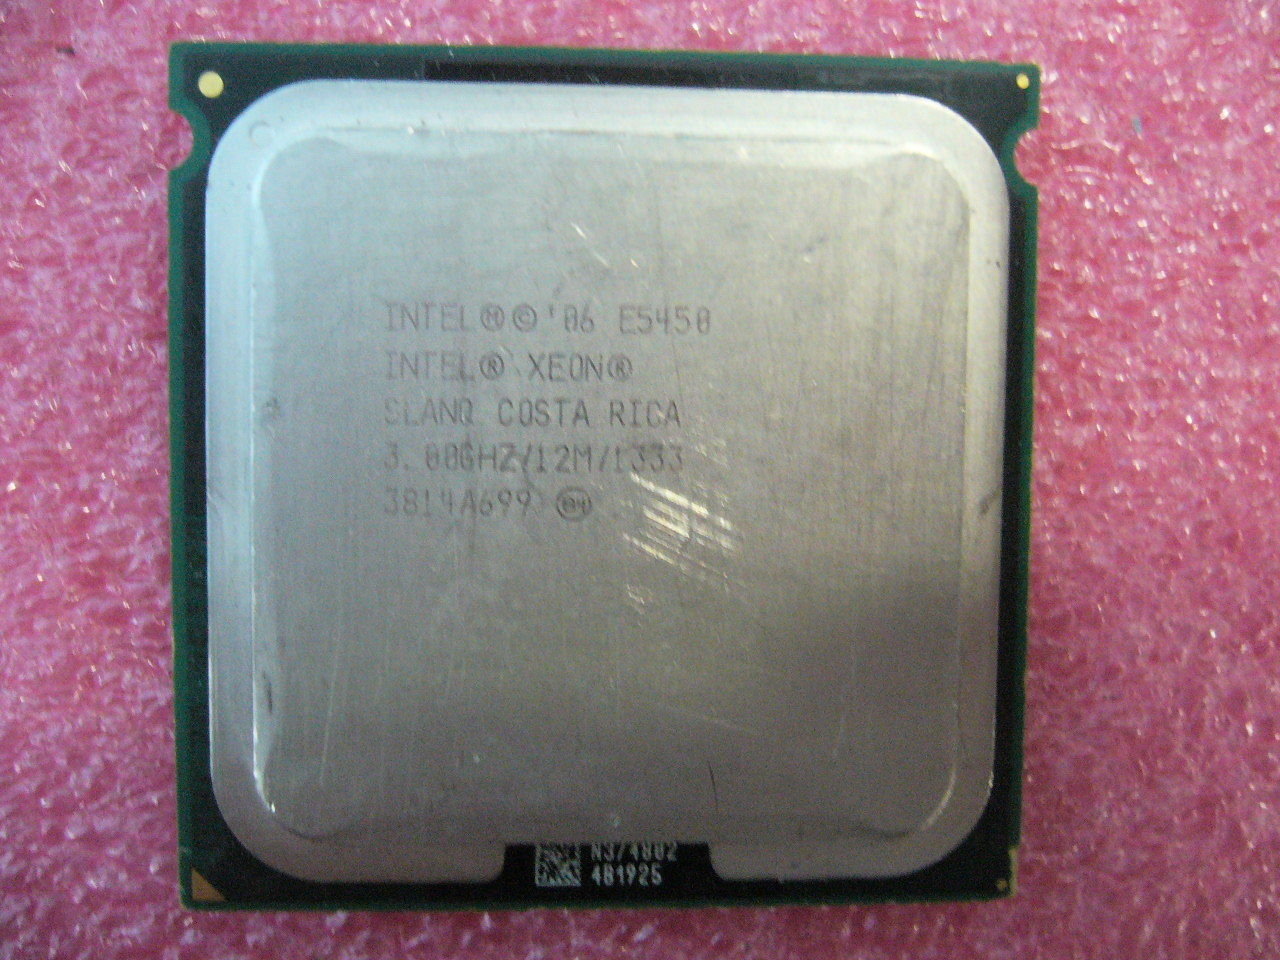 QTY 1x Intel Xeon CPU Quad Core E5450 3.00Ghz/12MB/1333Mhz LGA771 SLANQ - zum Schließen ins Bild klicken